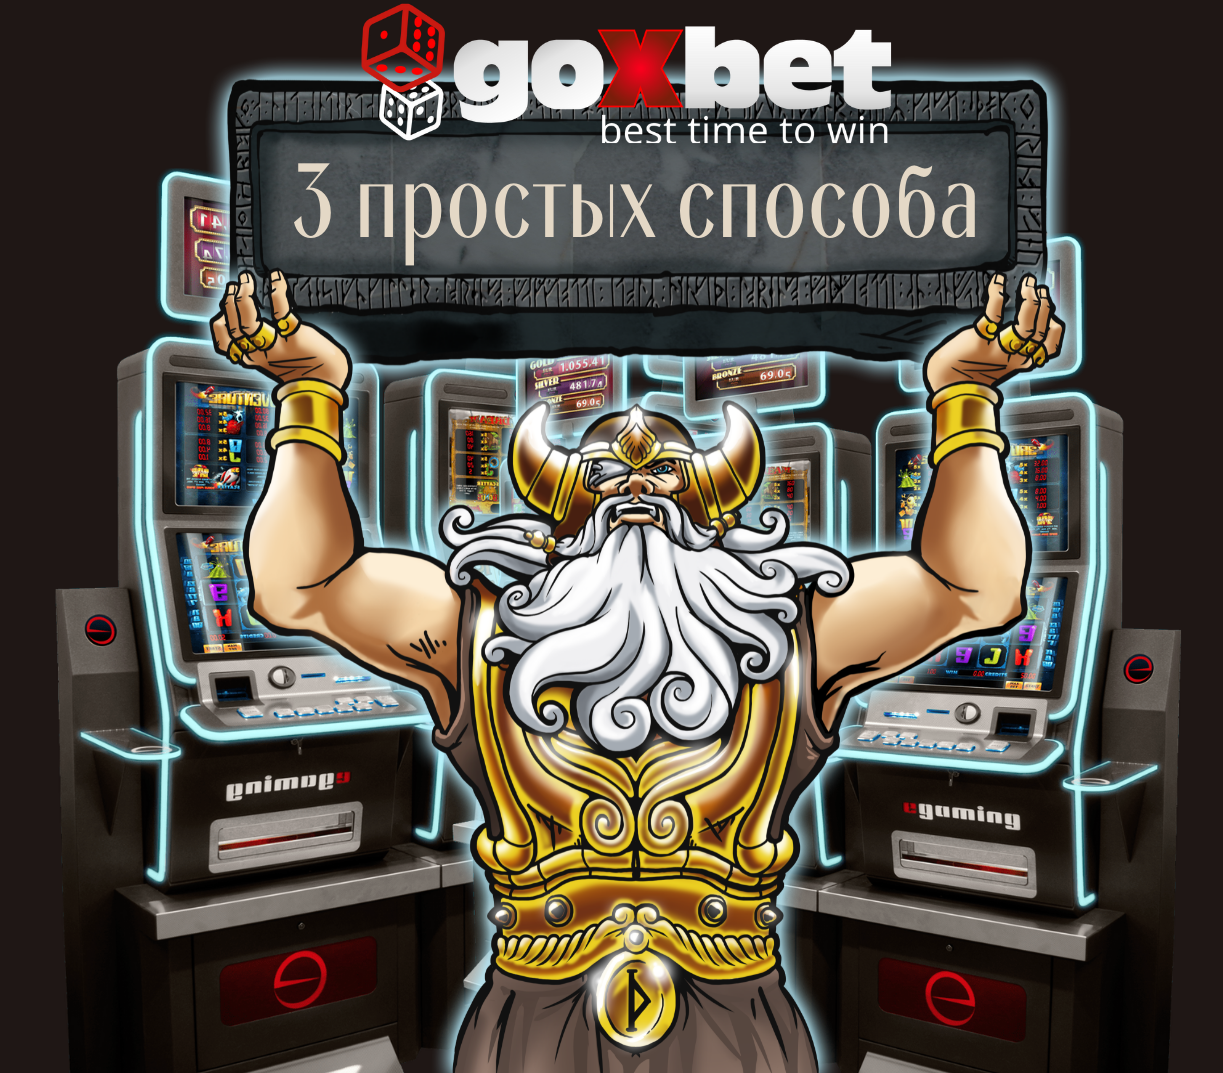 3 способа для игры в игровые автоматы 777 в онлайн казино Goxbet